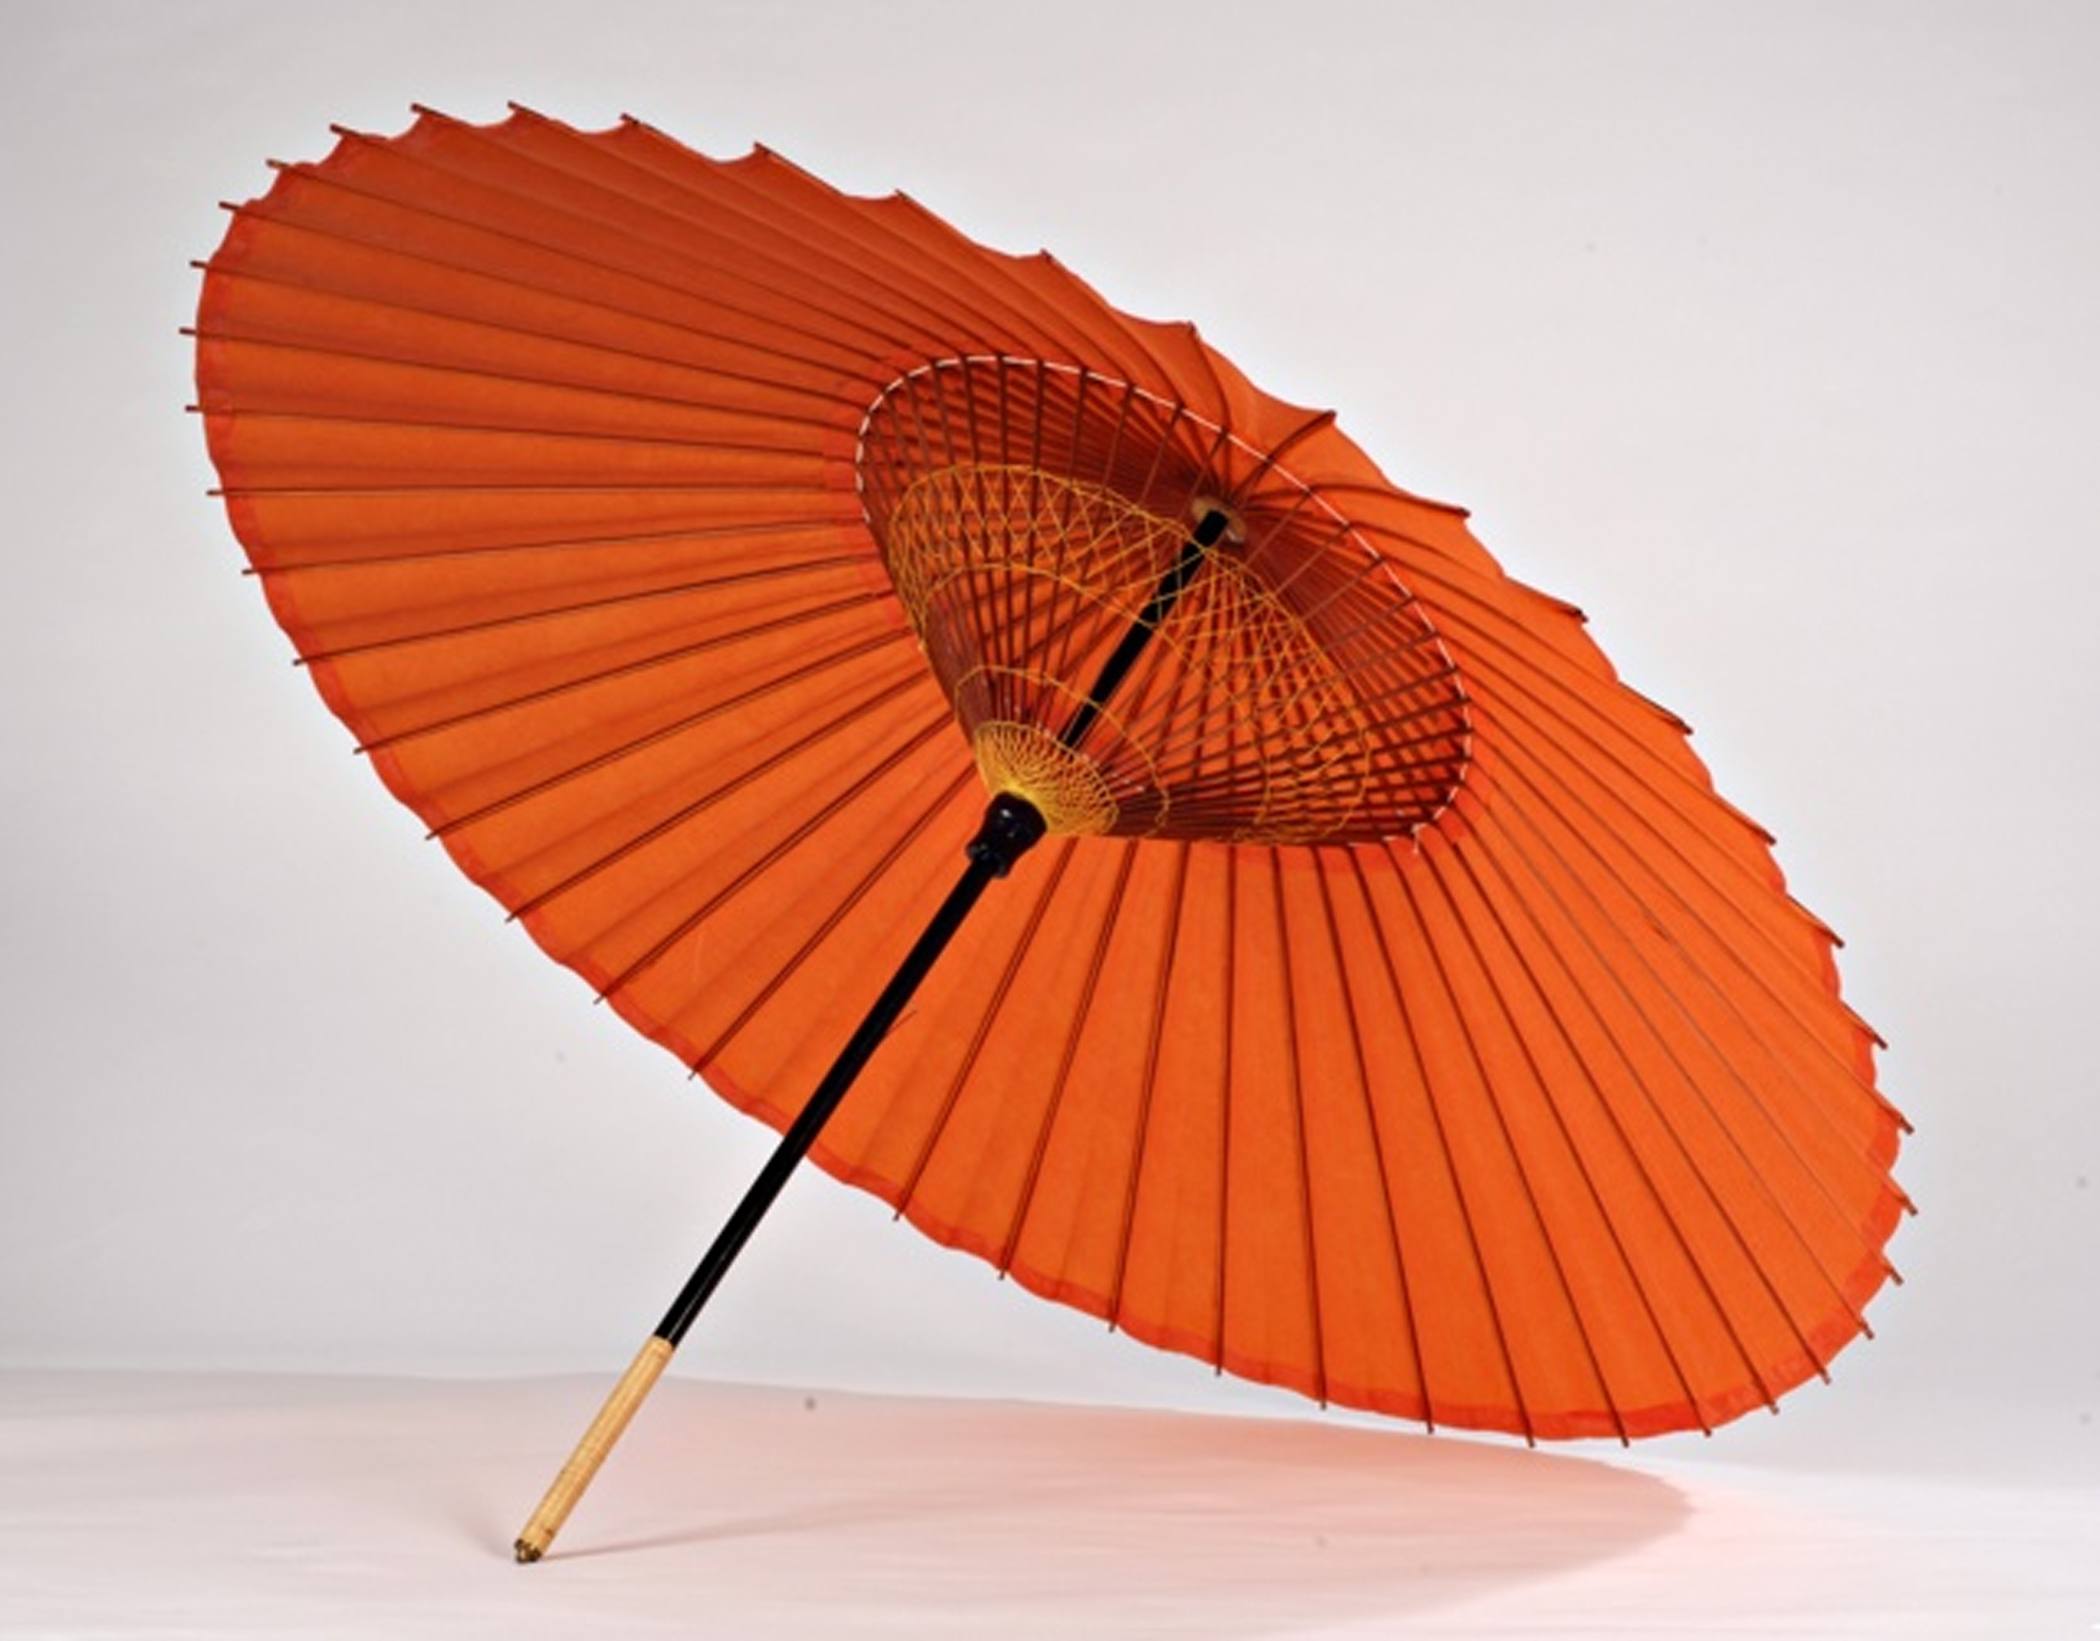 Зонт китай